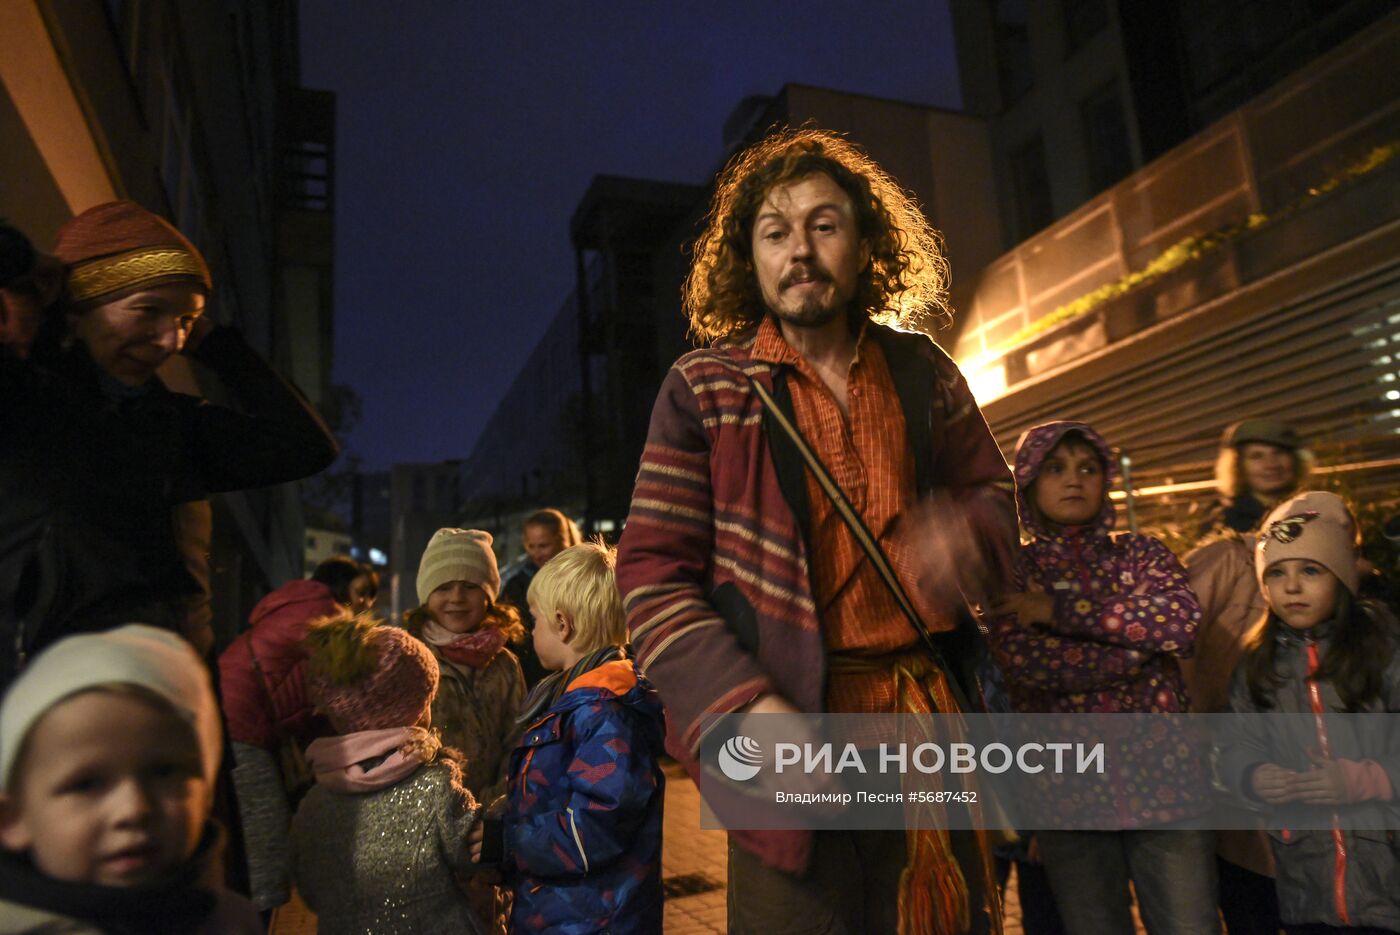 Гастрольный тур Московского кукольного театра "Душегреи" в Европе